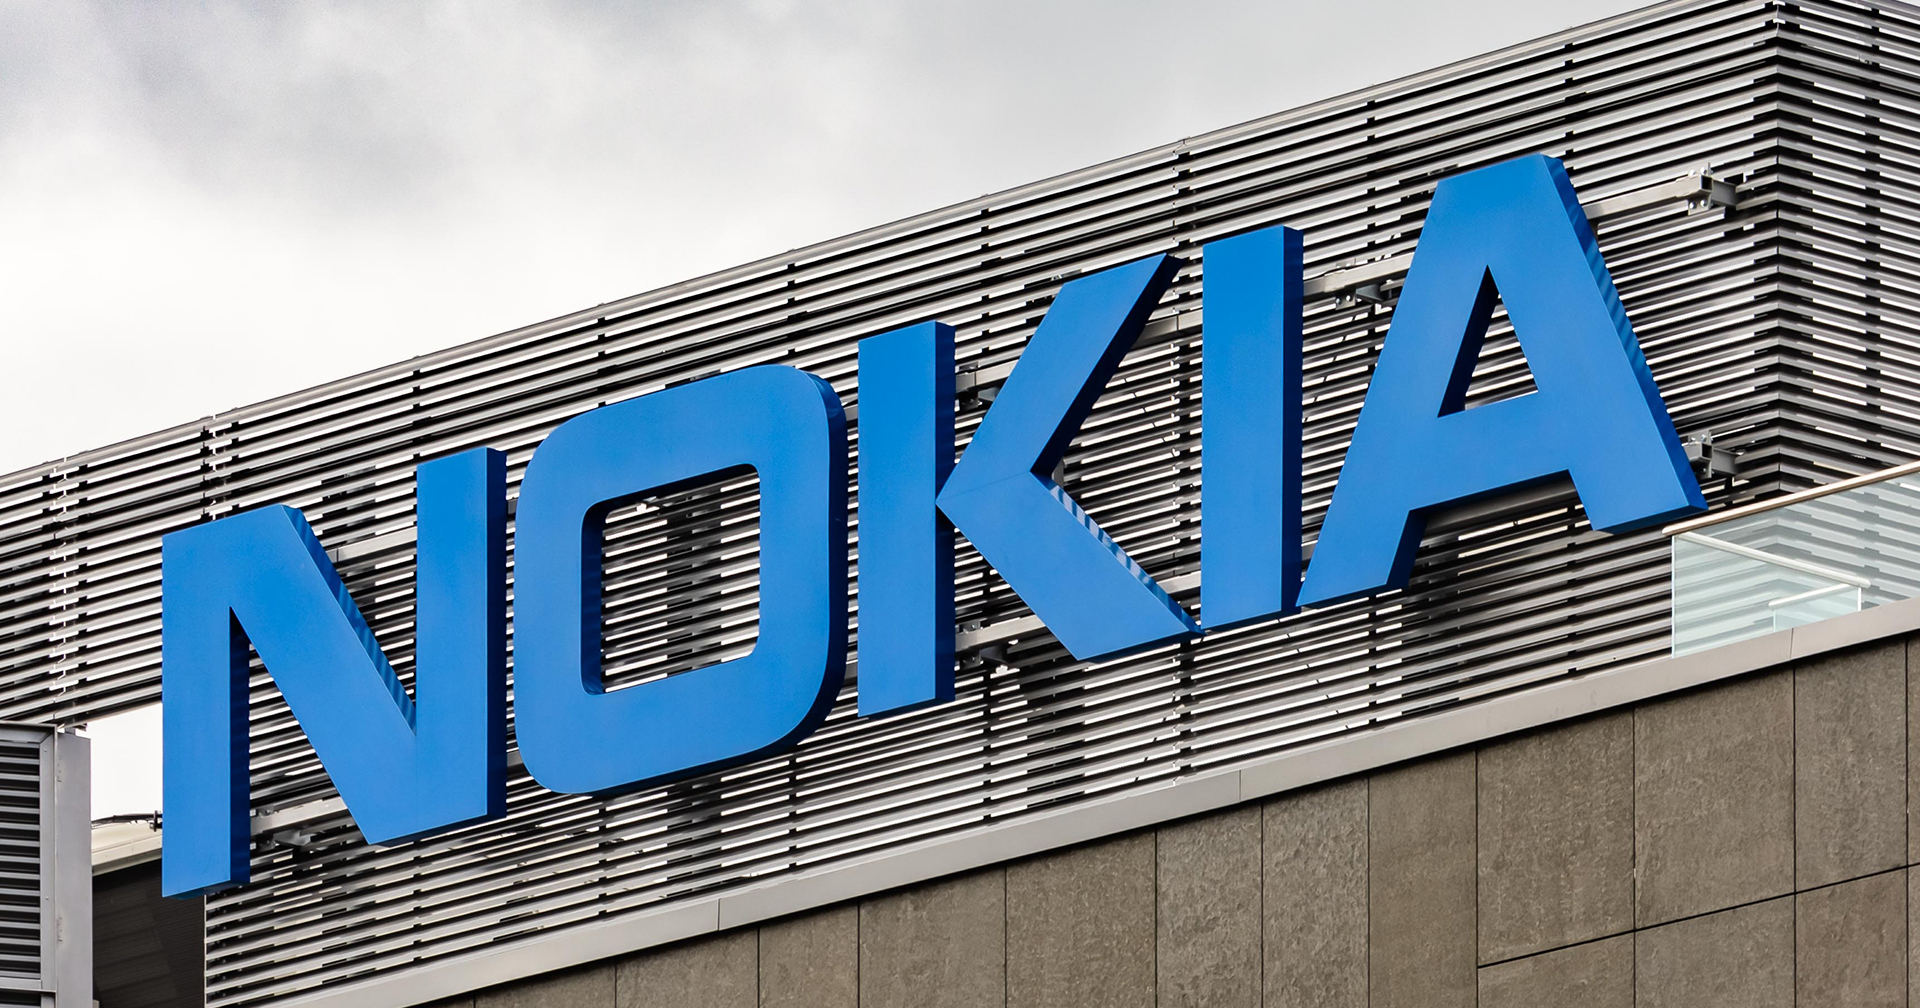 Nokia ชนะการประมูลเครือข่ายวิทยุ 5G RAN ในประเทศจีนเป็นครั้งแรก